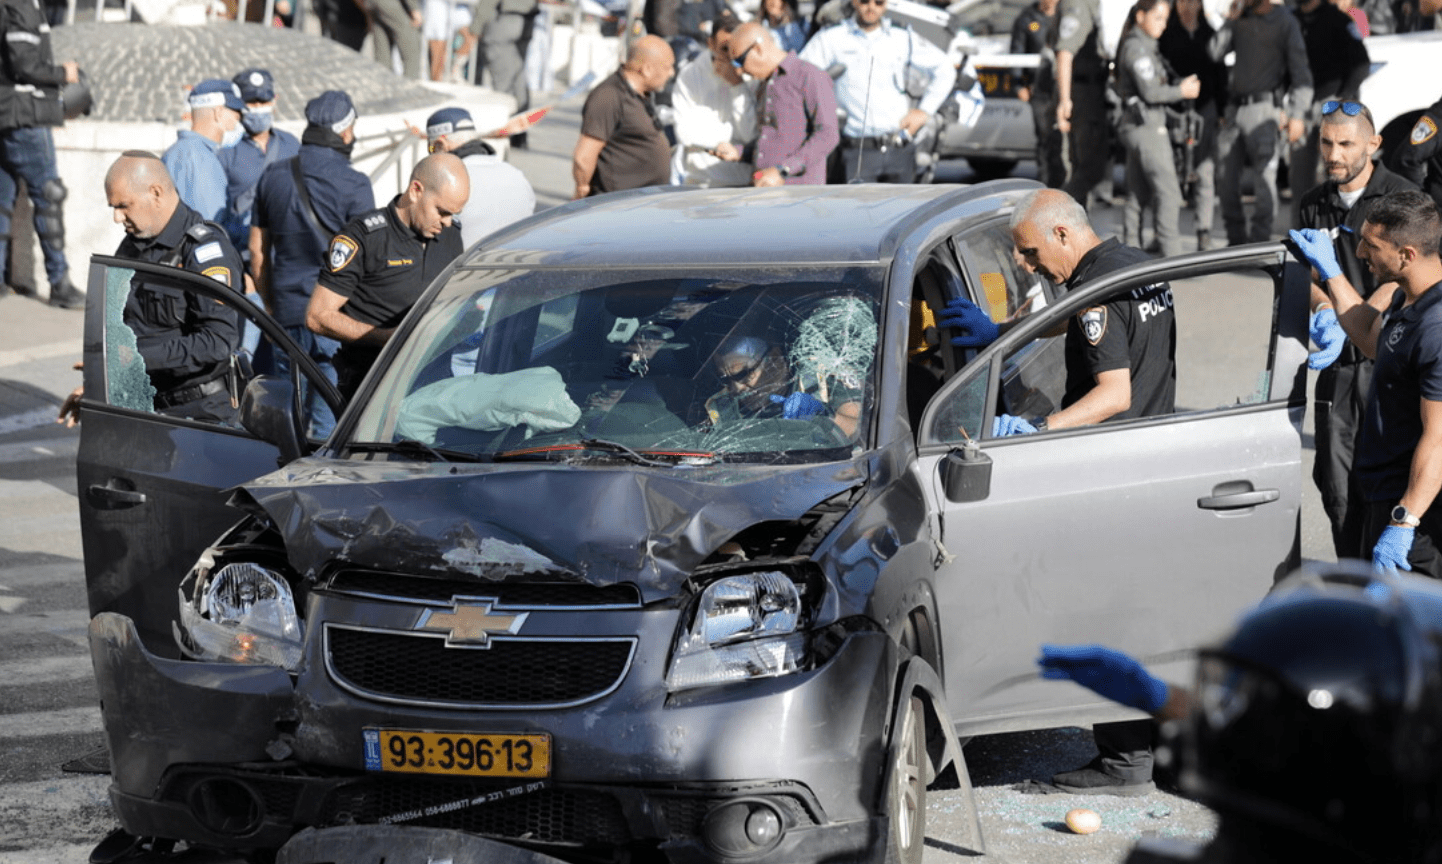 A Gerusalemme 8 feriti per un'auto sulla folla, ucciso il conducente: per la polizia è terrorismo